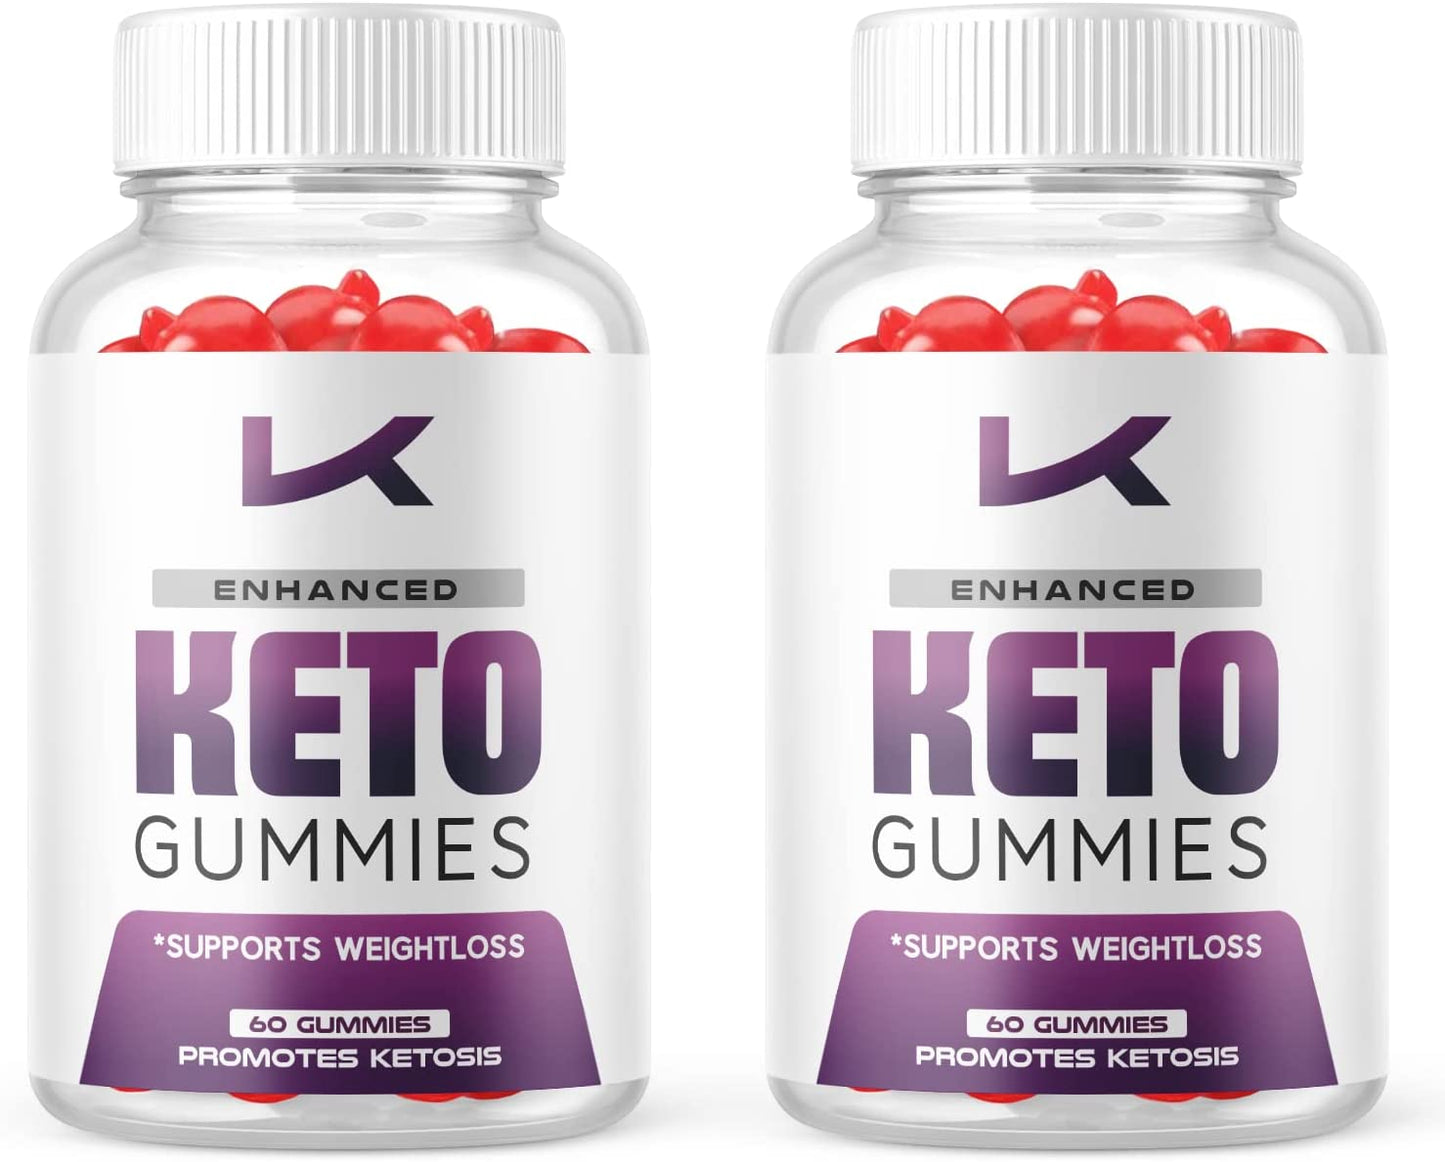 Enhanced Keto ACV Gummies